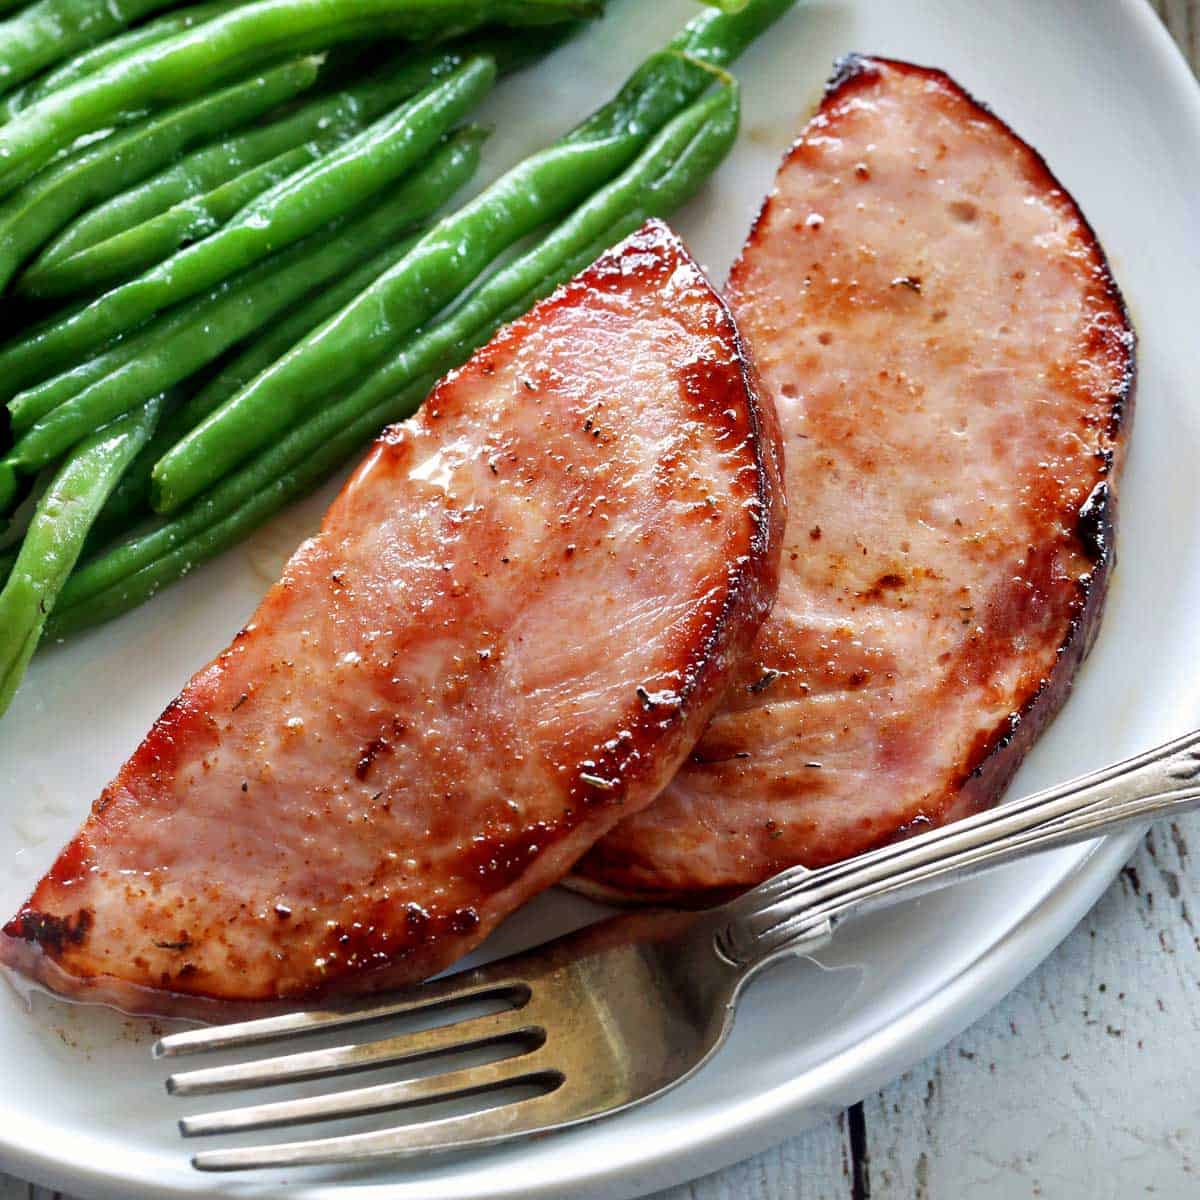 https://healthyrecipesblogs.com/wp-content/uploads/2024/04/ham-steak-featured.jpg